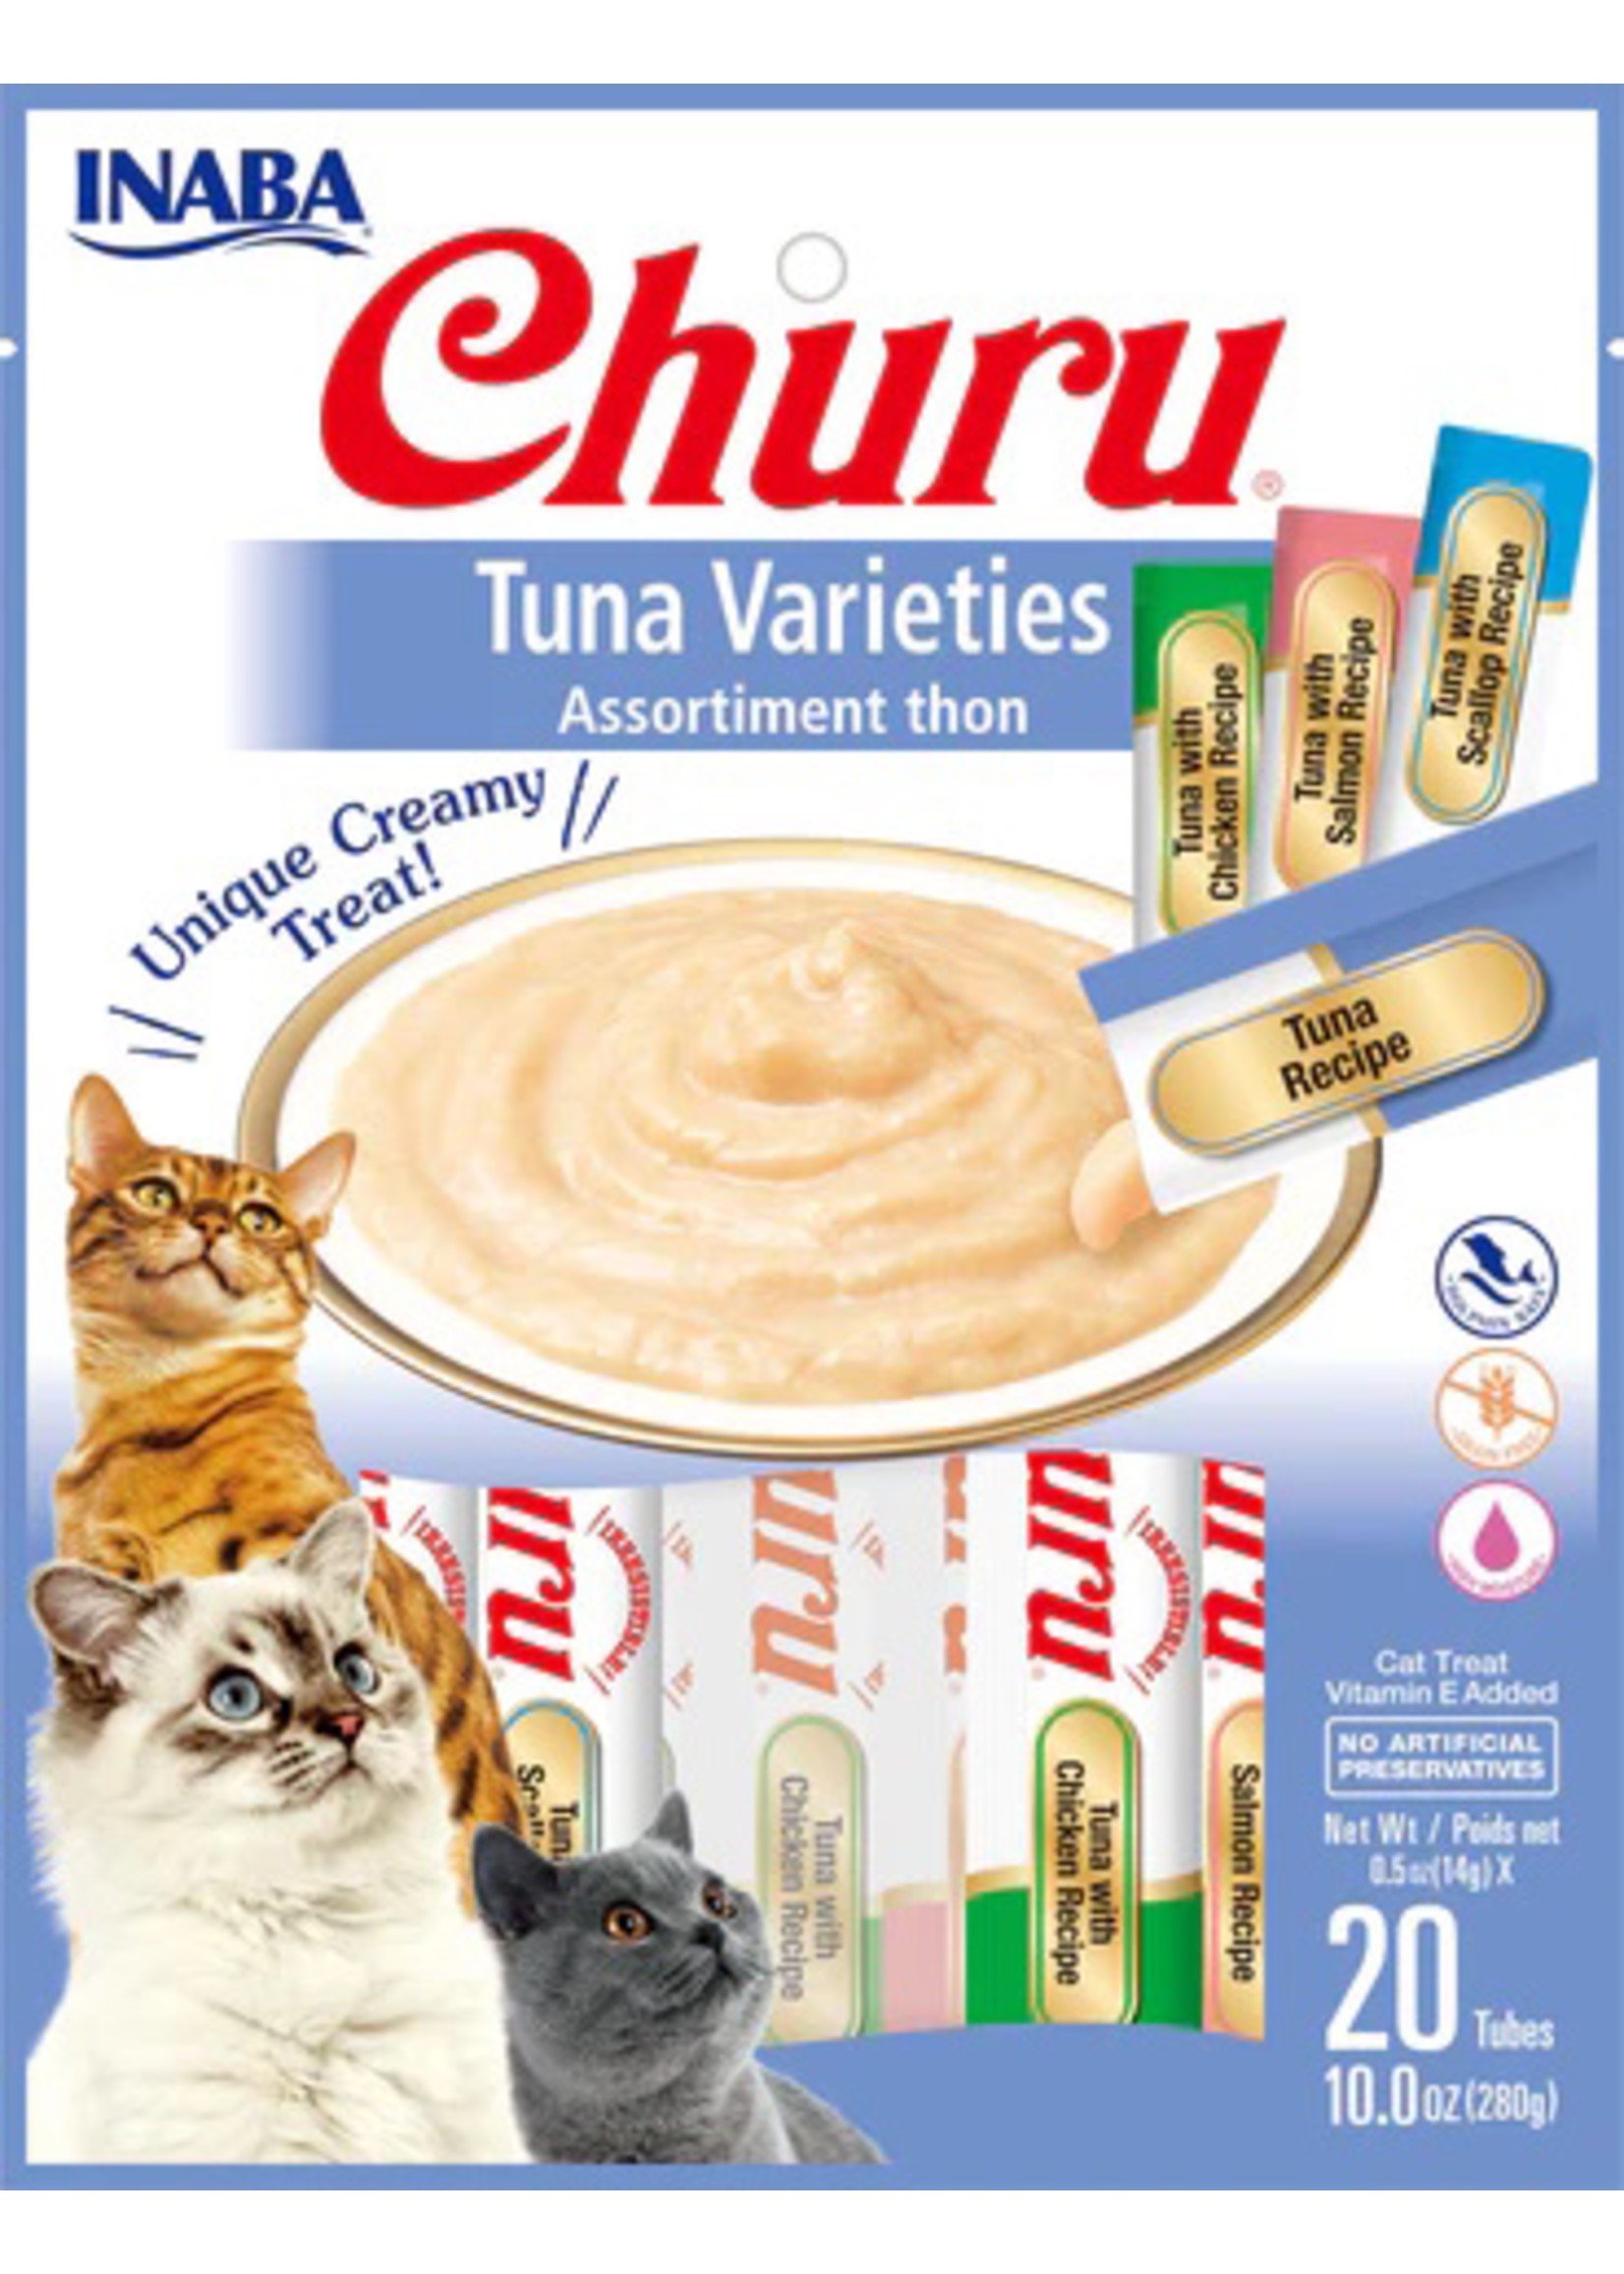 Inaba Churu Creamy Cat Treats Tuna Variety